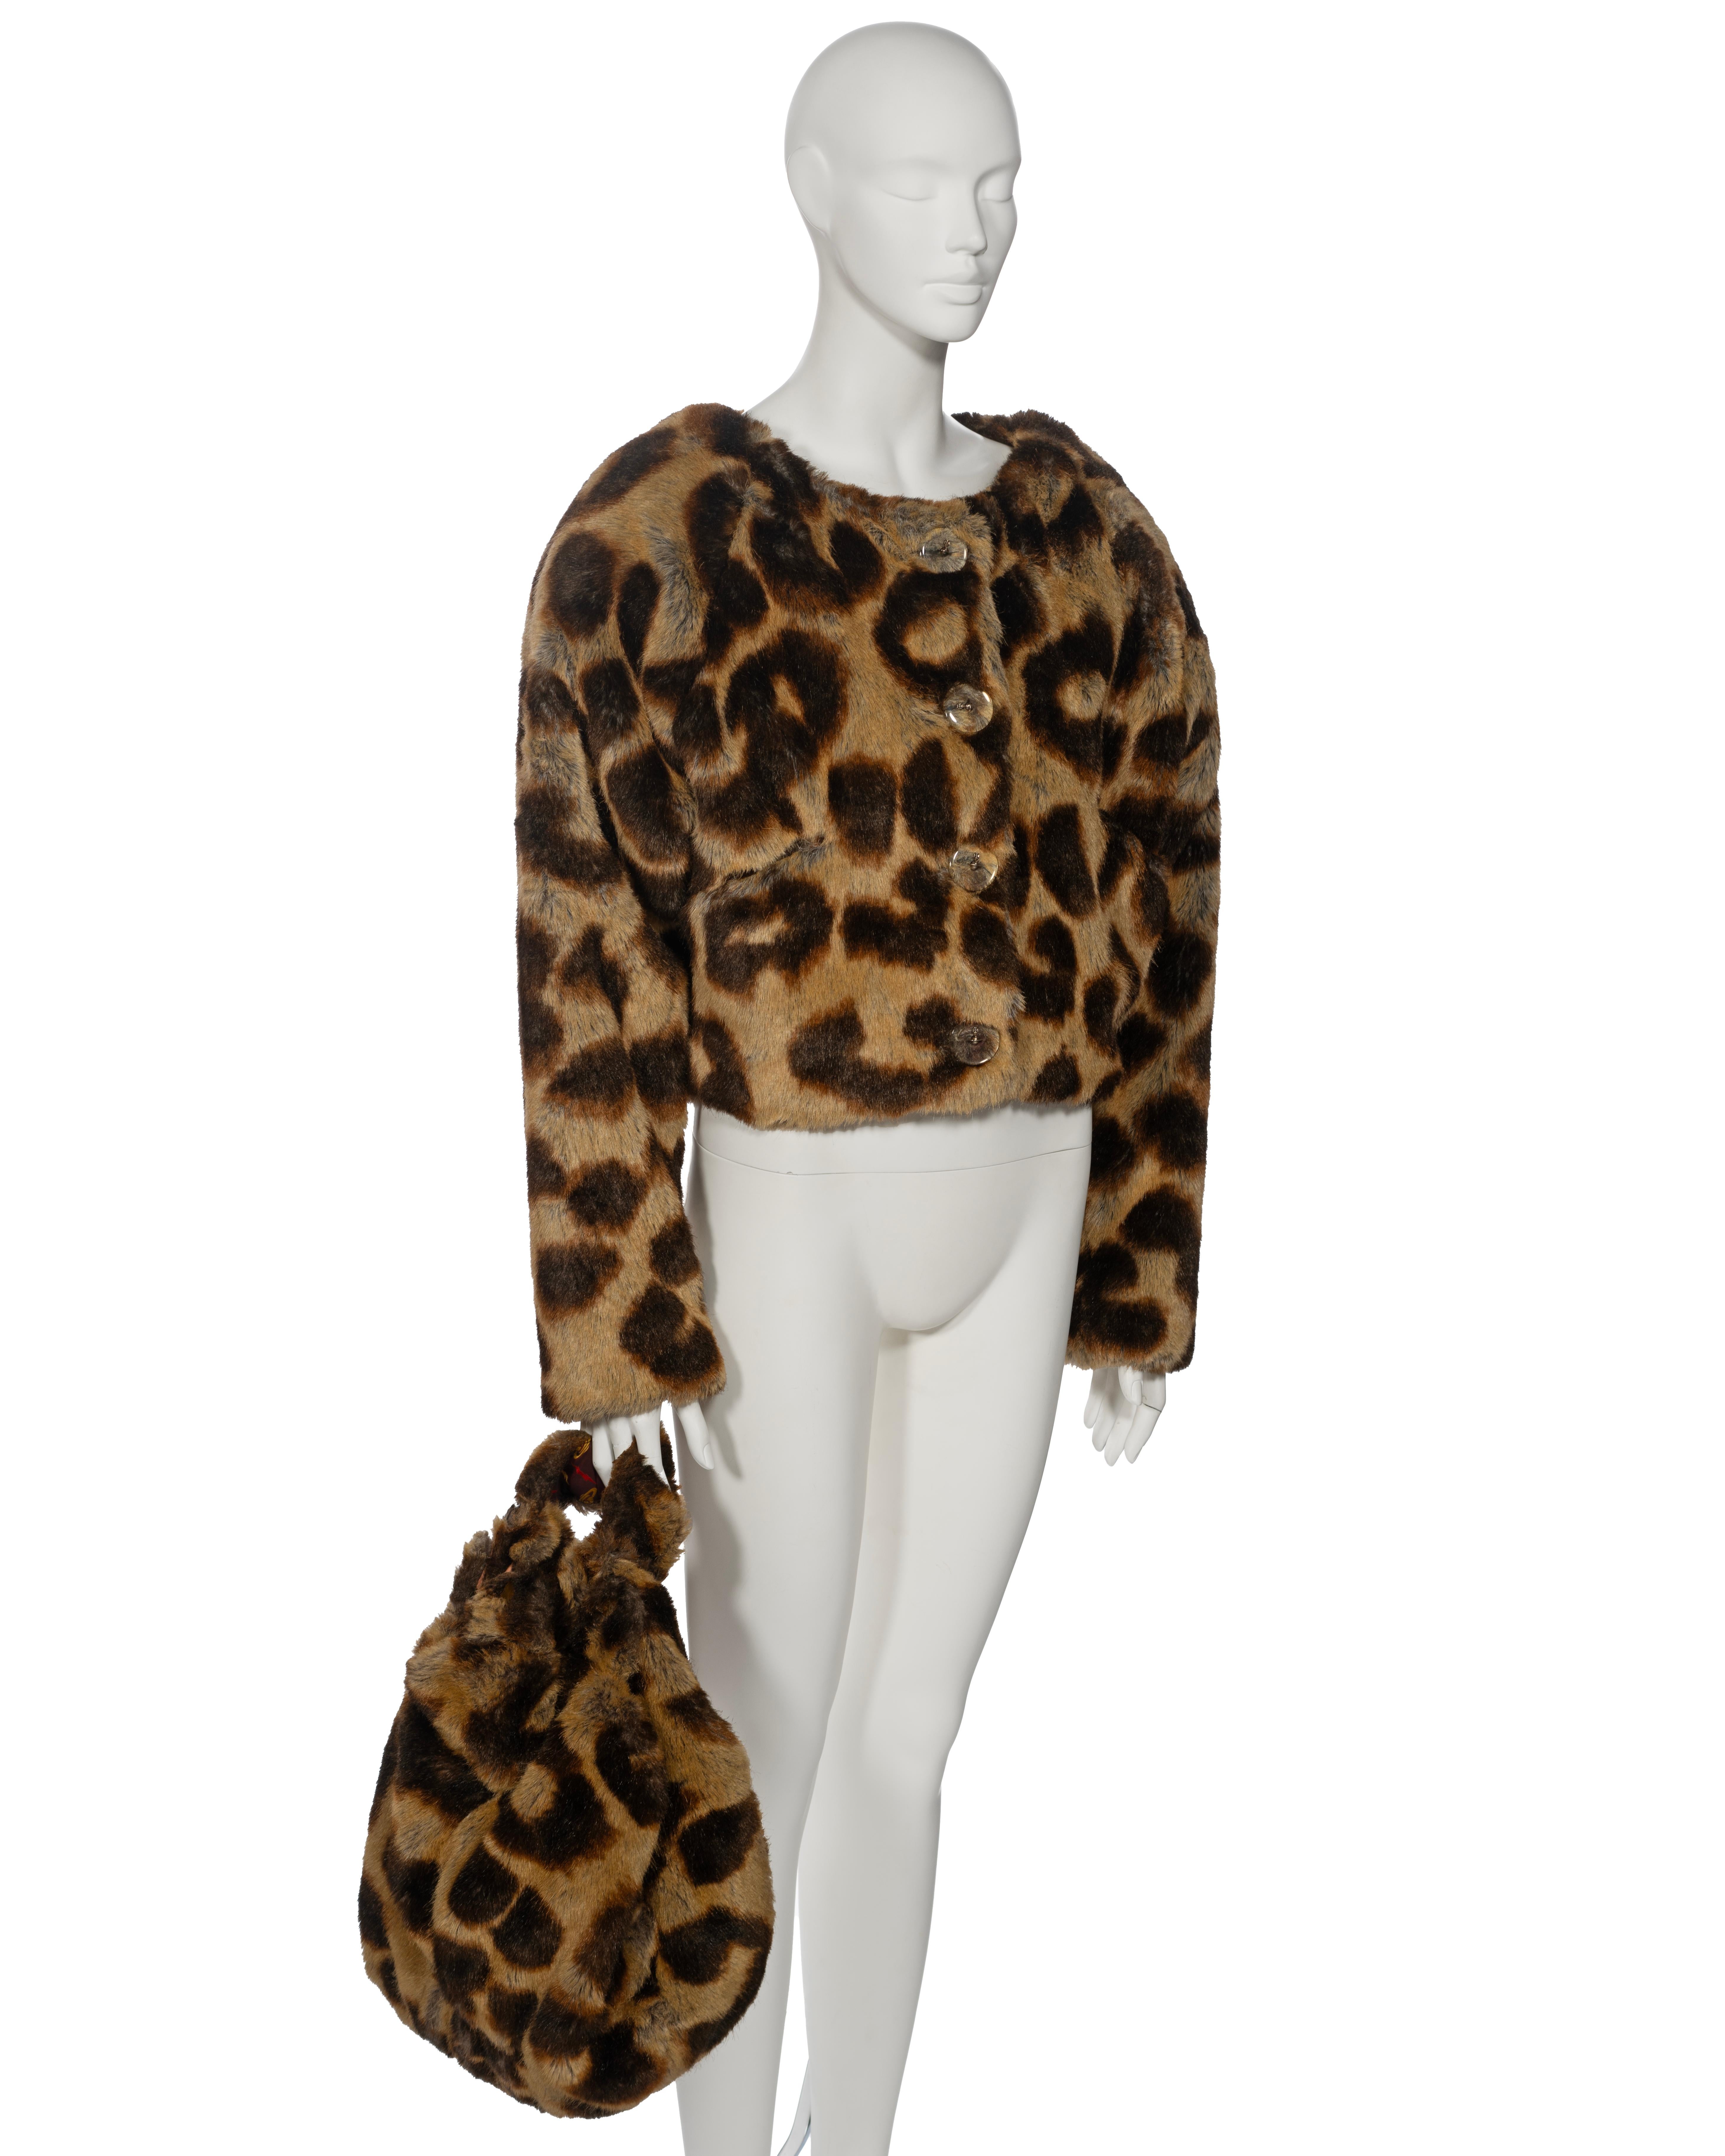 Vivienne Westwood Leopard Print Faux Fur Jacket and Bag Set, fw 1992 1